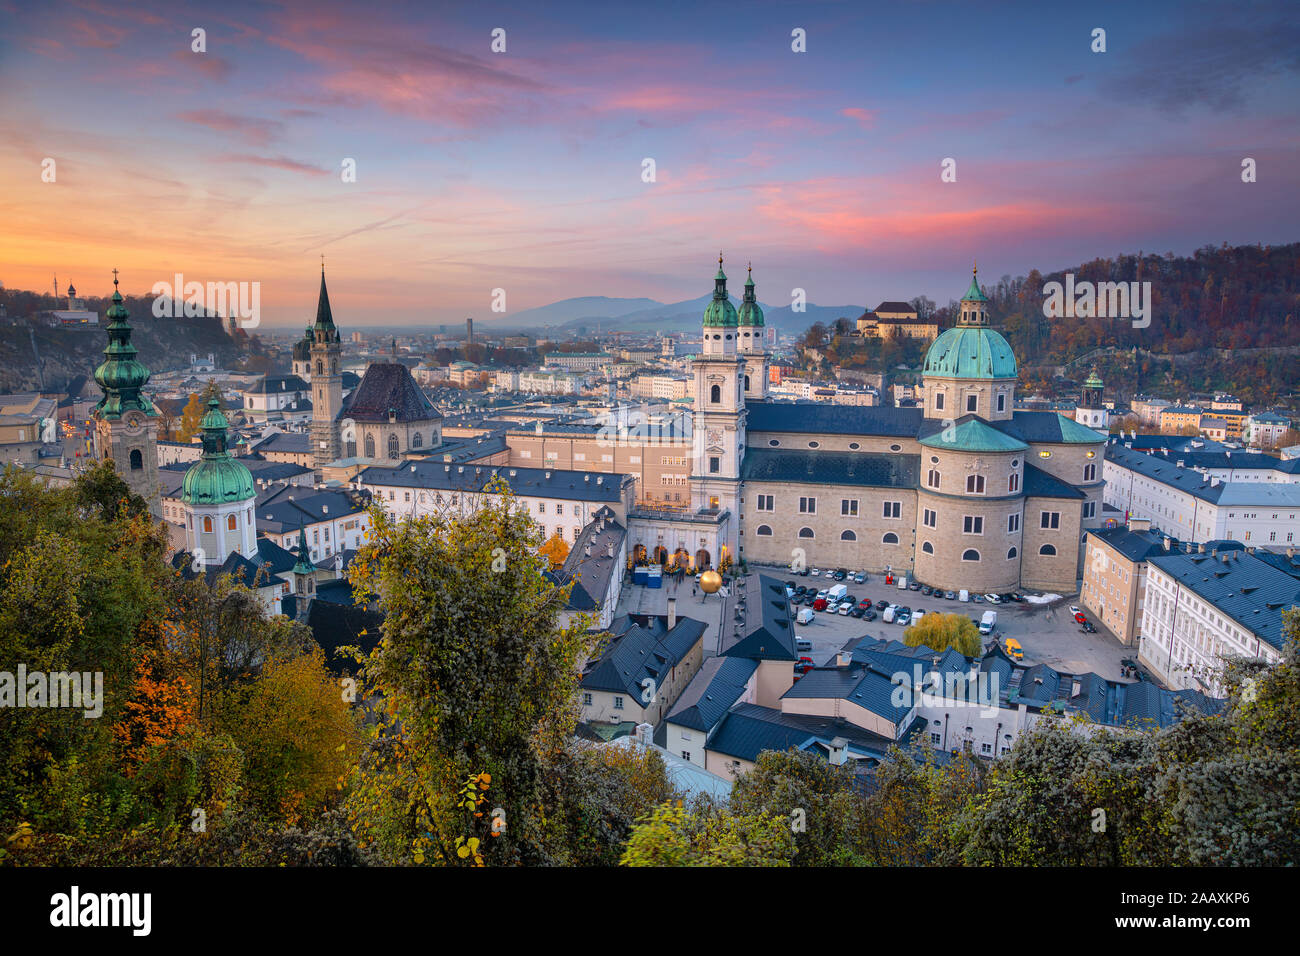 Salzburg, Österreich. Stadtbild Bild der Salzburg, Österreich mit Salzburg Dom im Herbst Sonnenuntergang. Stockfoto